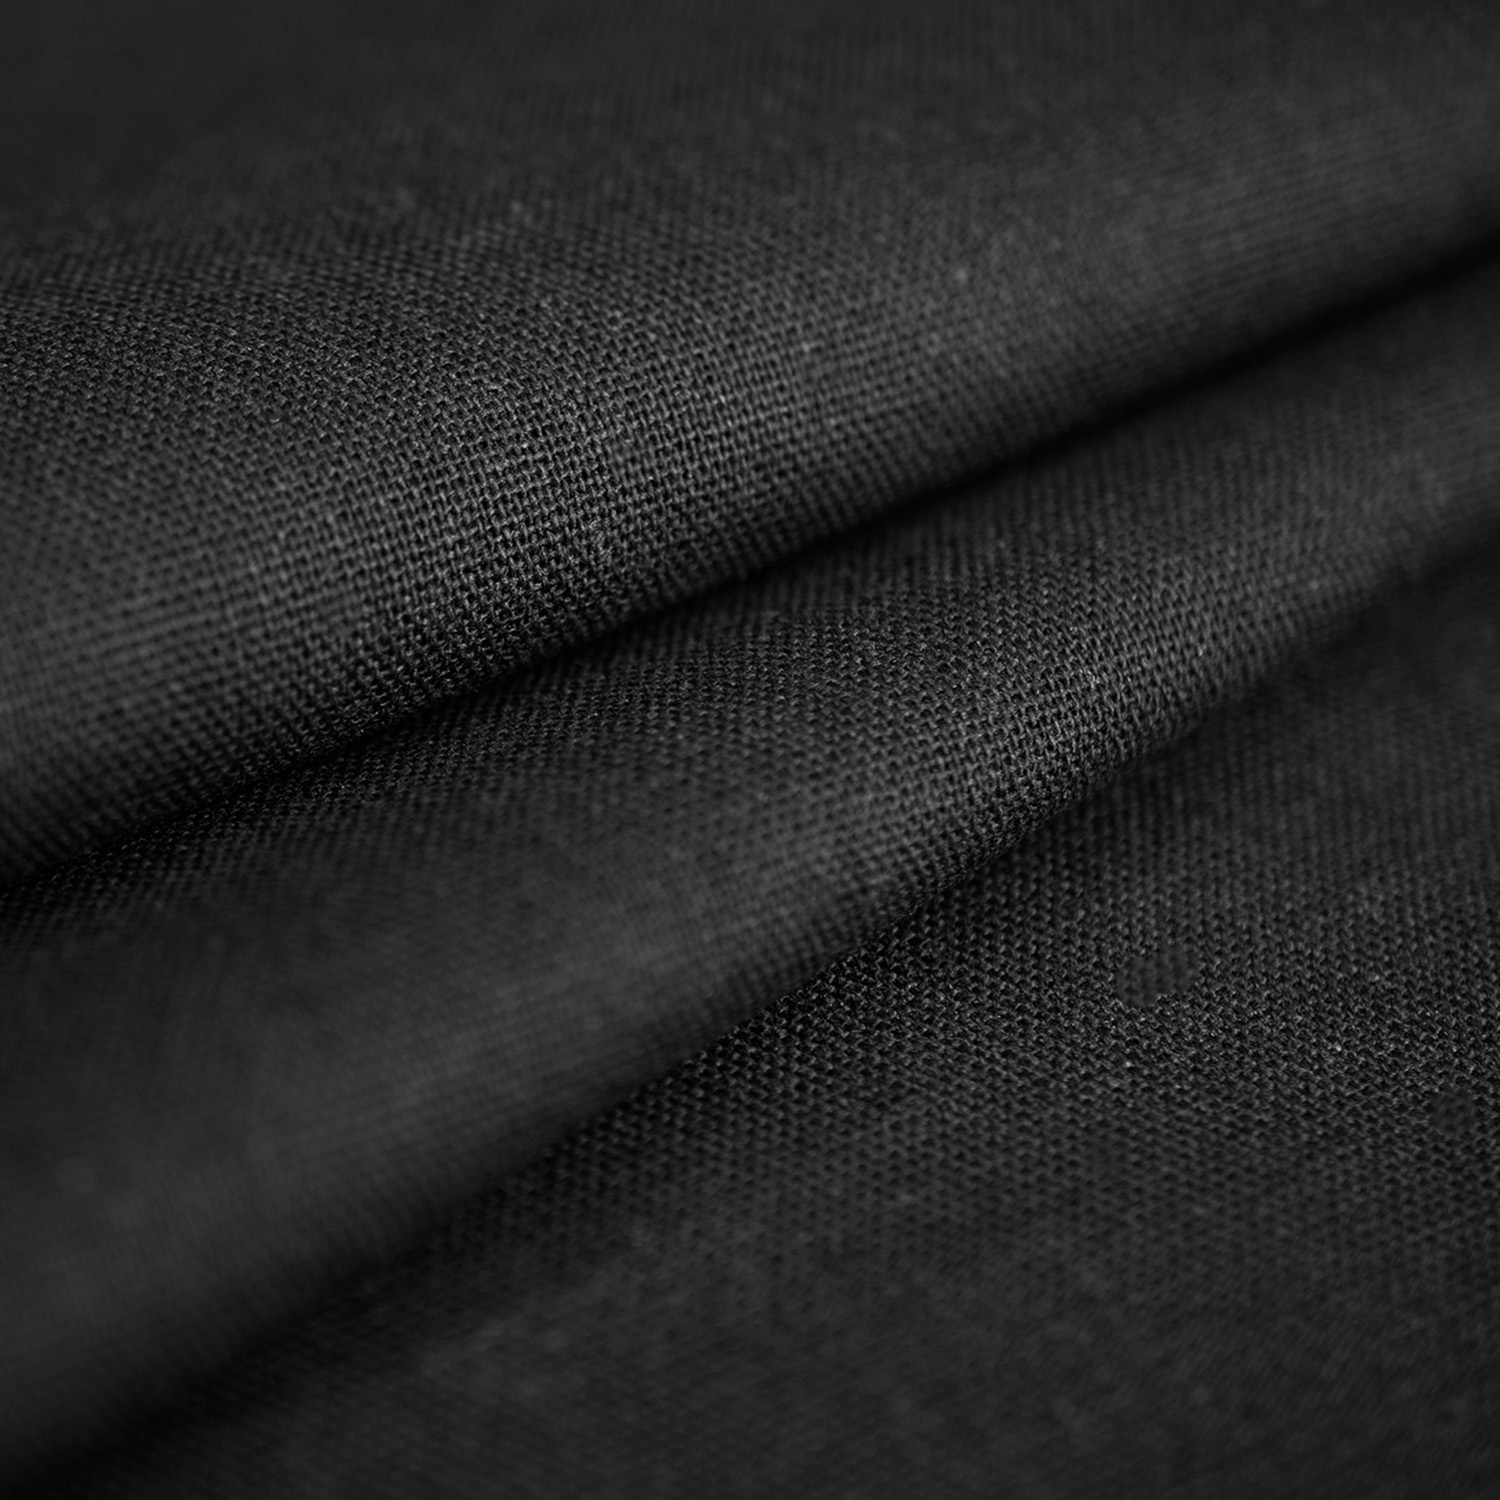 Len Natur – lniana tkanina o wyraźnym płóciennym splocie i jednolitym zabarwieniu.